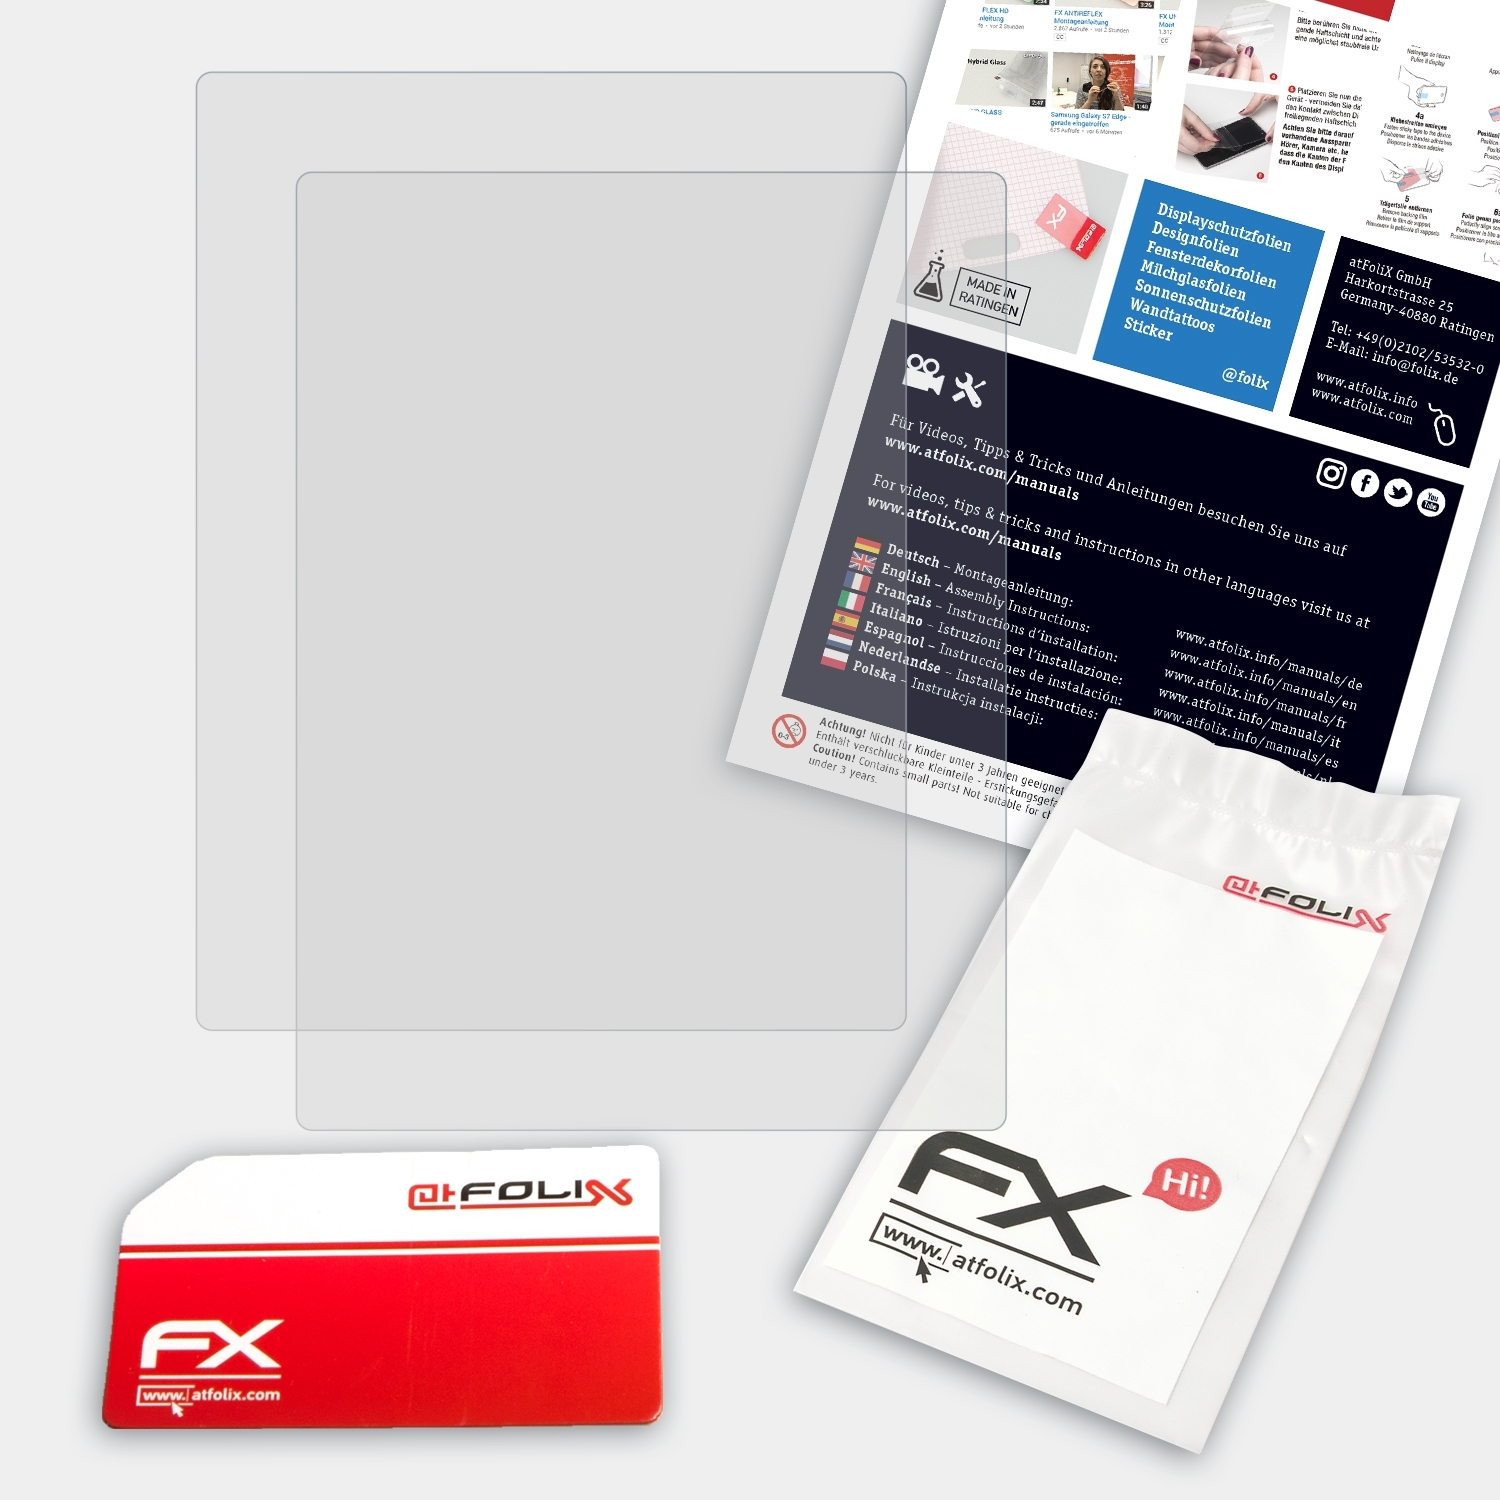 ATFOLIX 2x FX-Antireflex Displayschutz(für Touch Kobo 2.0)